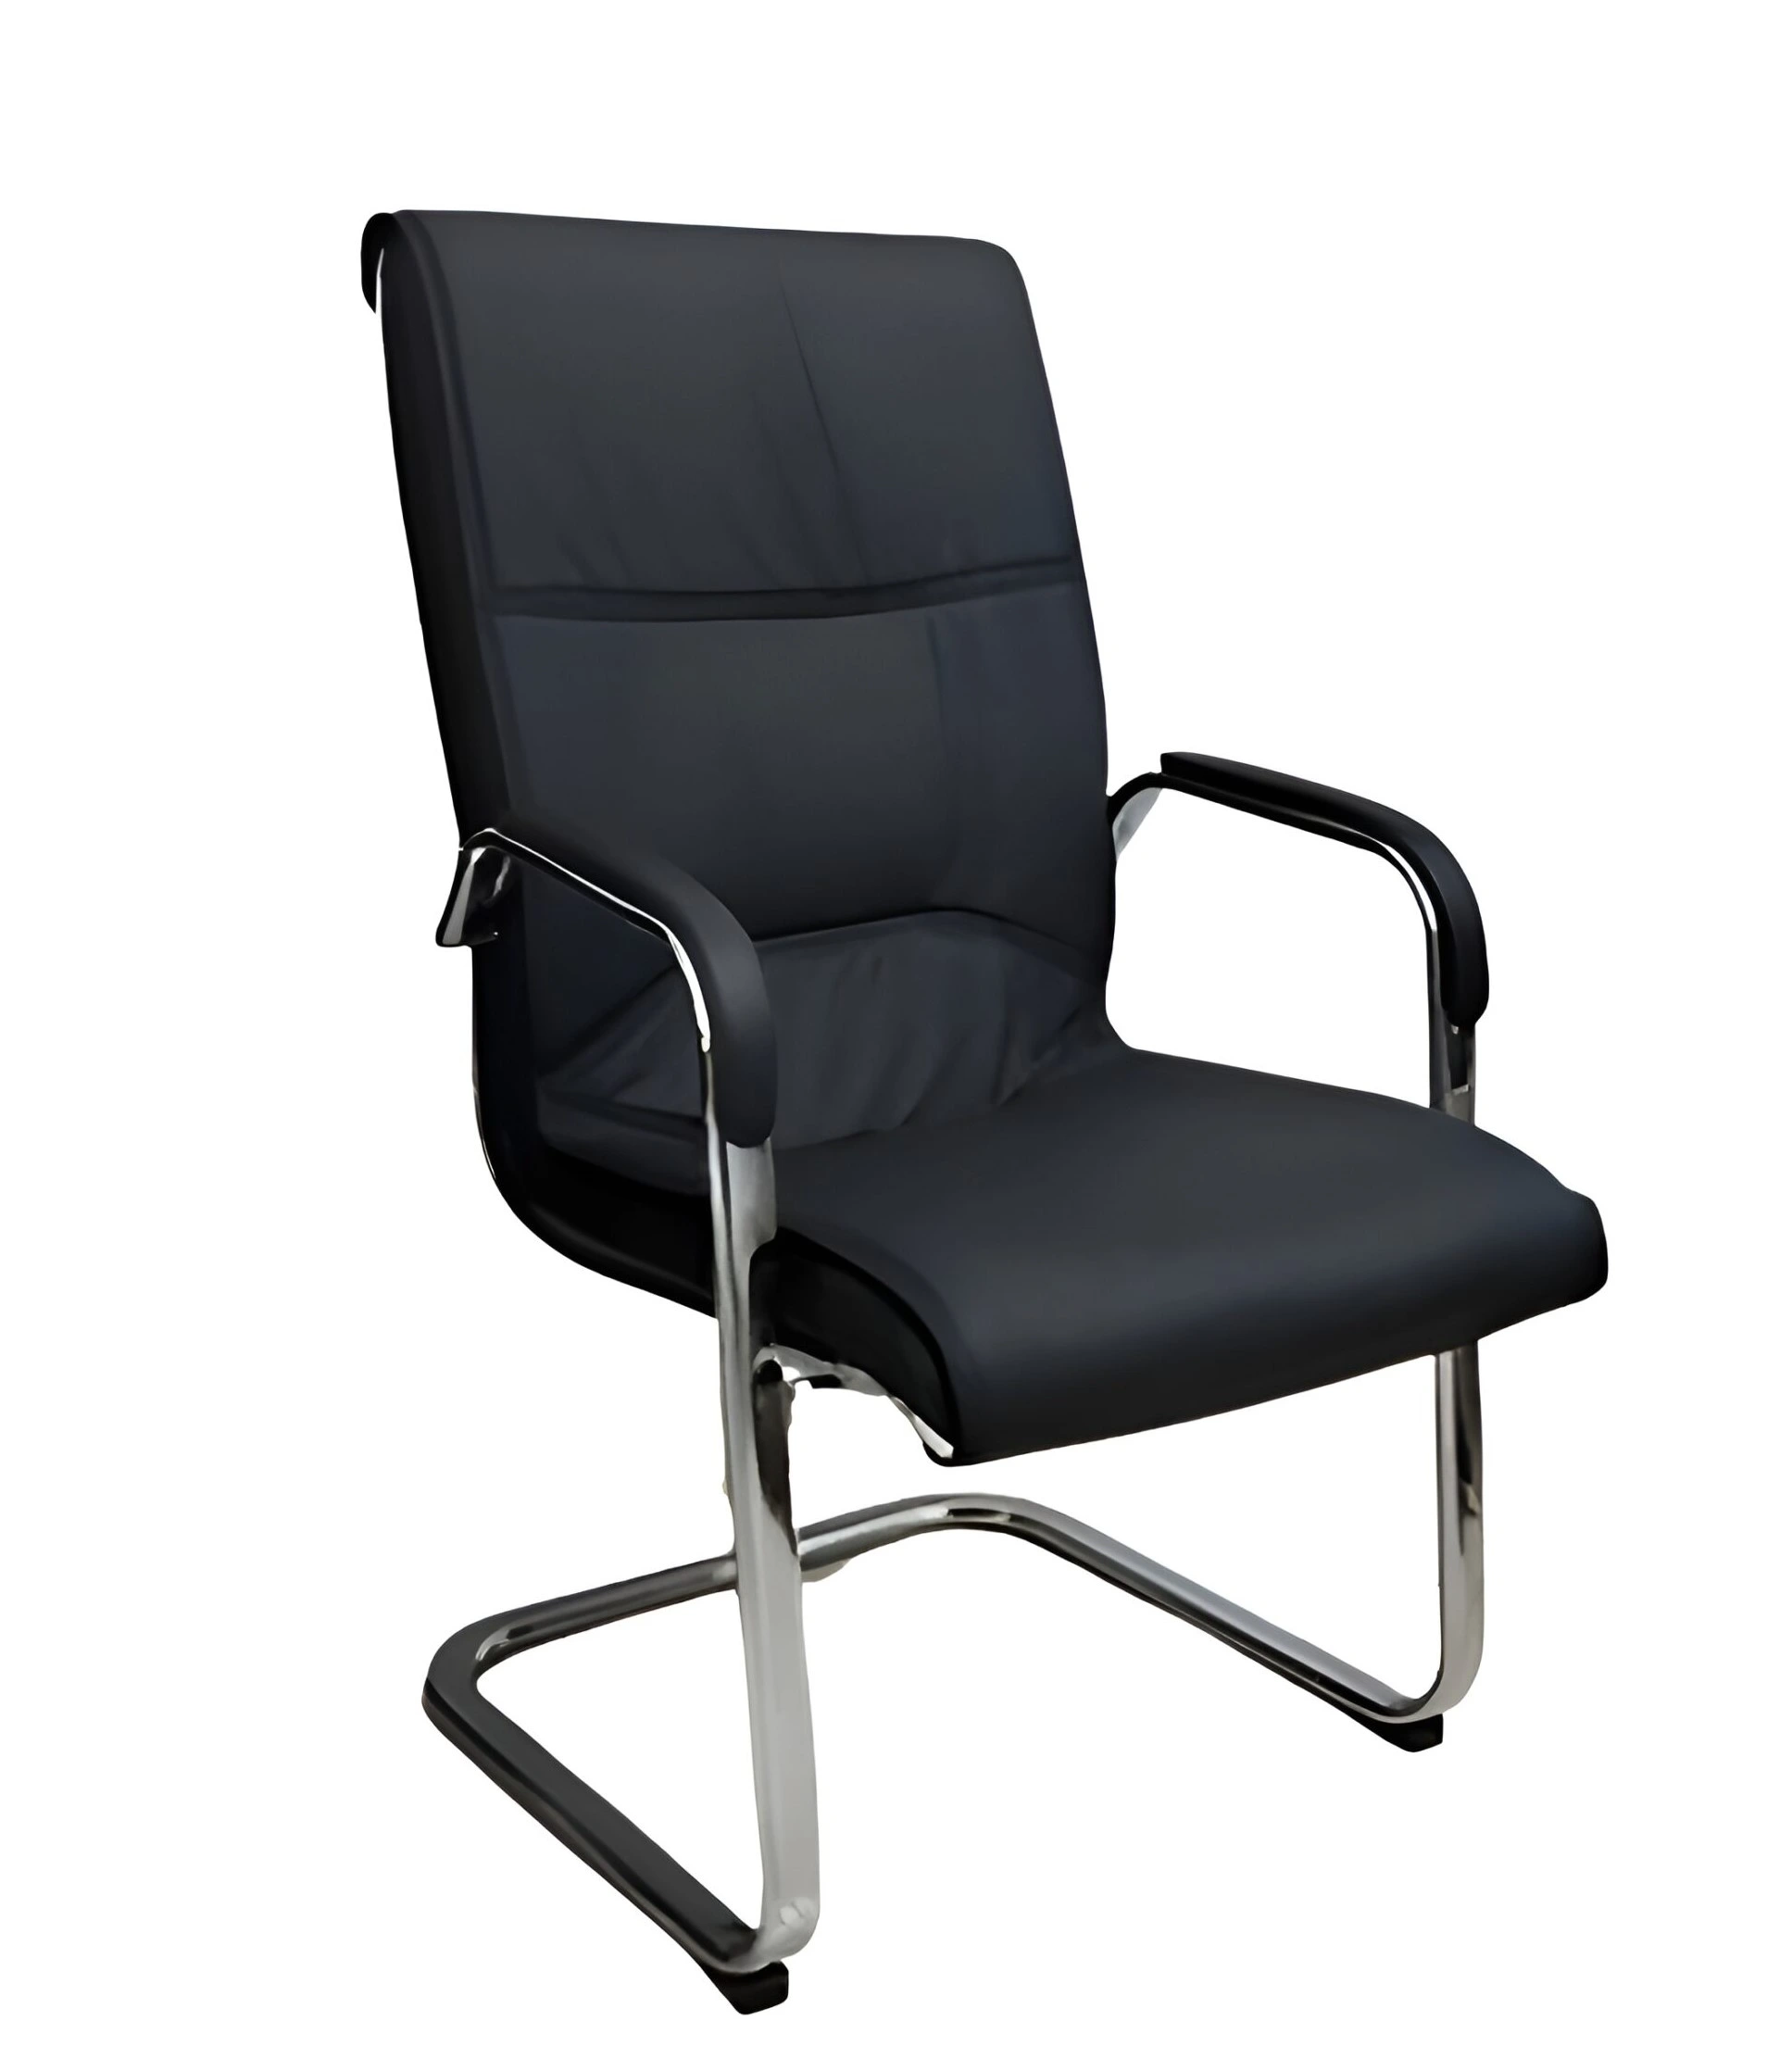 Thiết kế ghế bọc da simili mang lại sự sang trọng và đẳng cấp